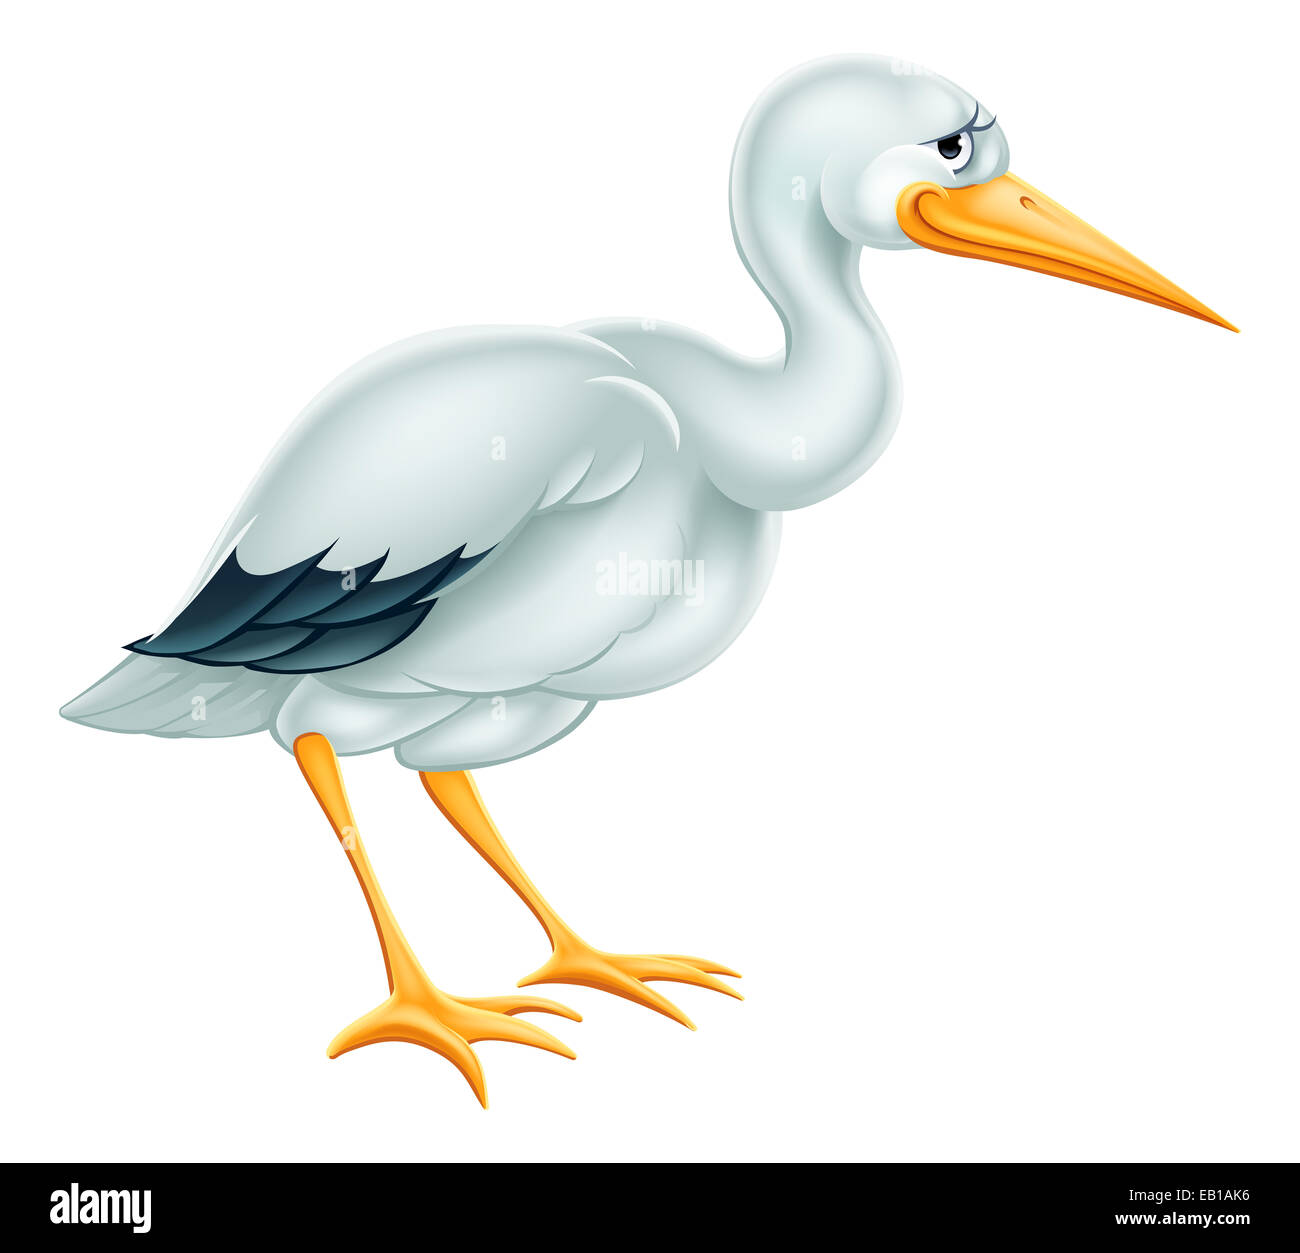 Ein Beispiel für einen niedlichen Cartoon Storch Vogel Charakter Stockfoto